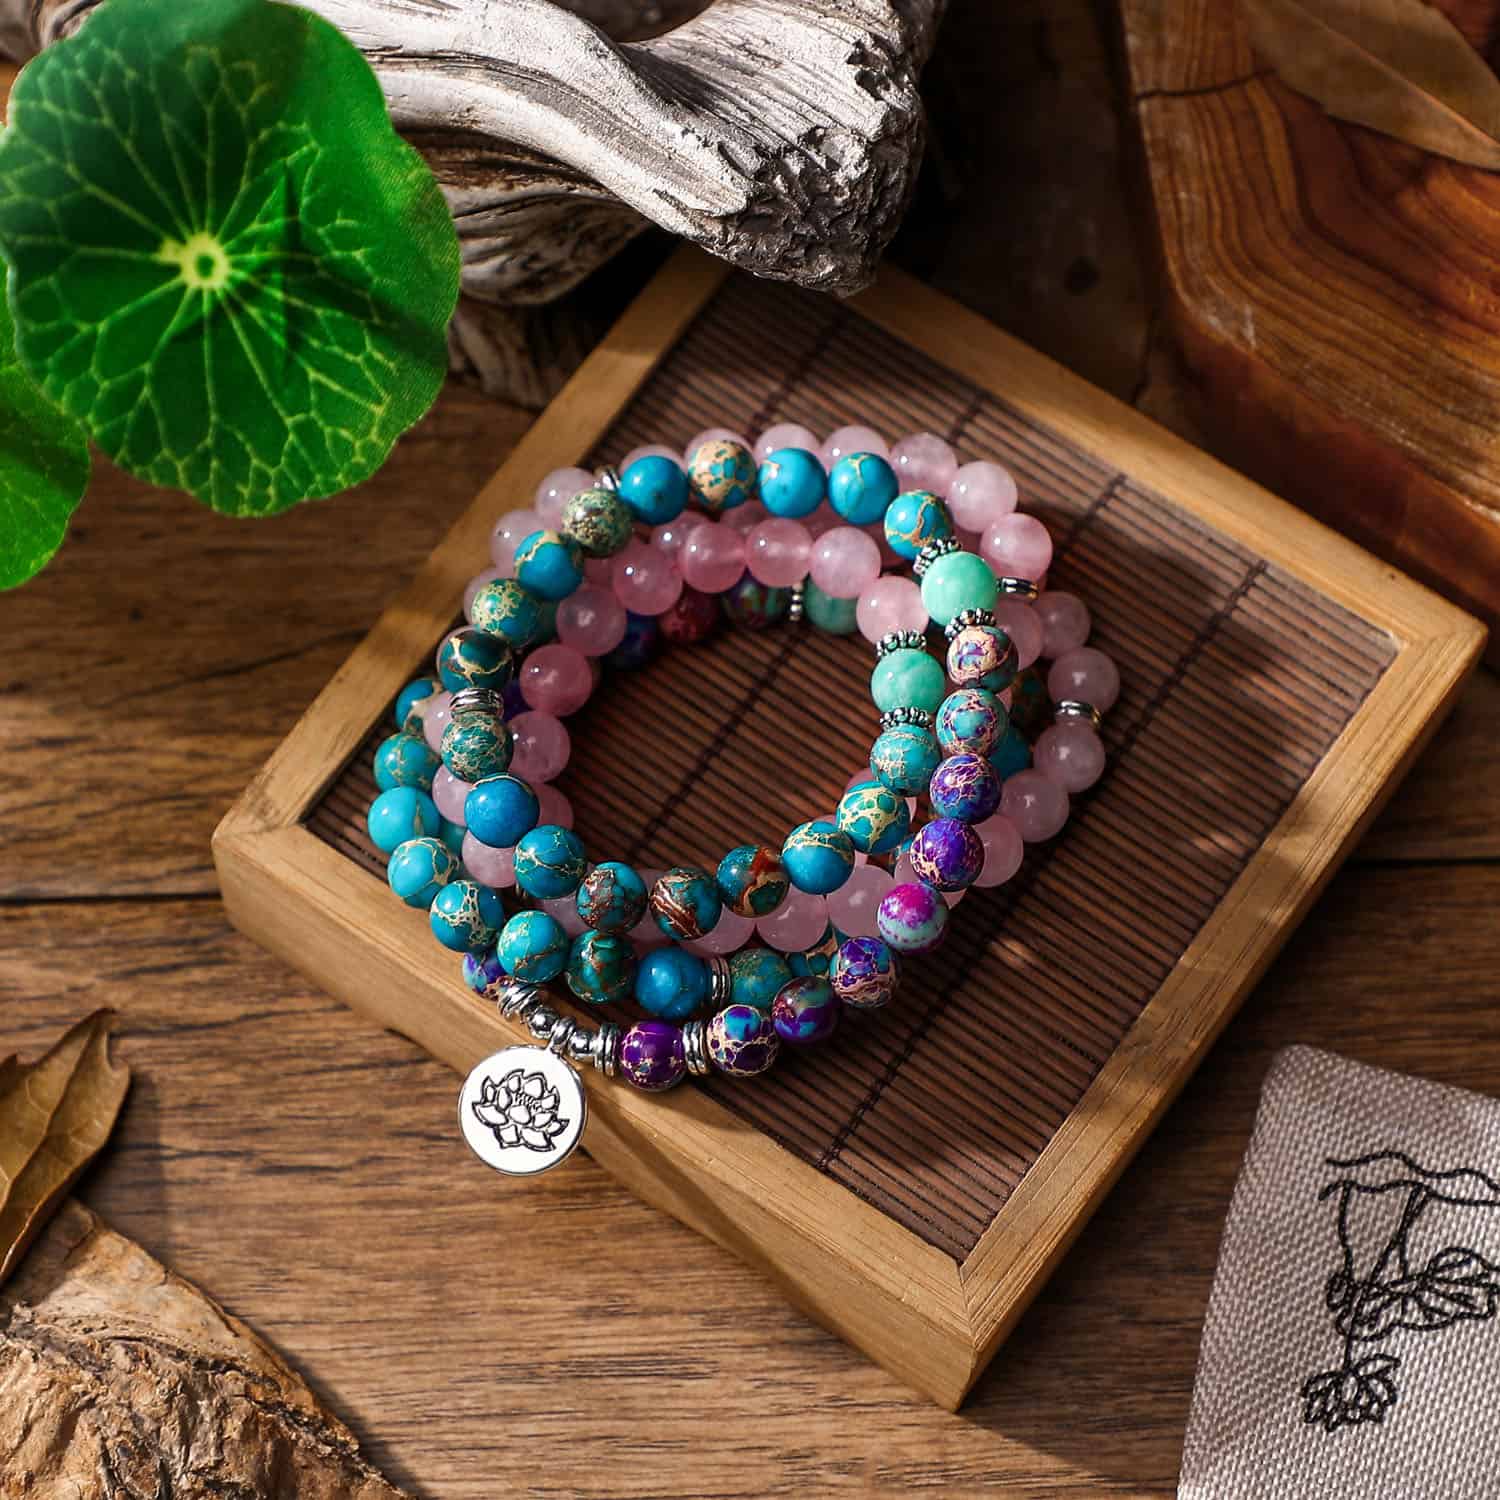 Japamala necklace and bracelet – Pink Jasper and Turquoise, Indigo with lotus flower